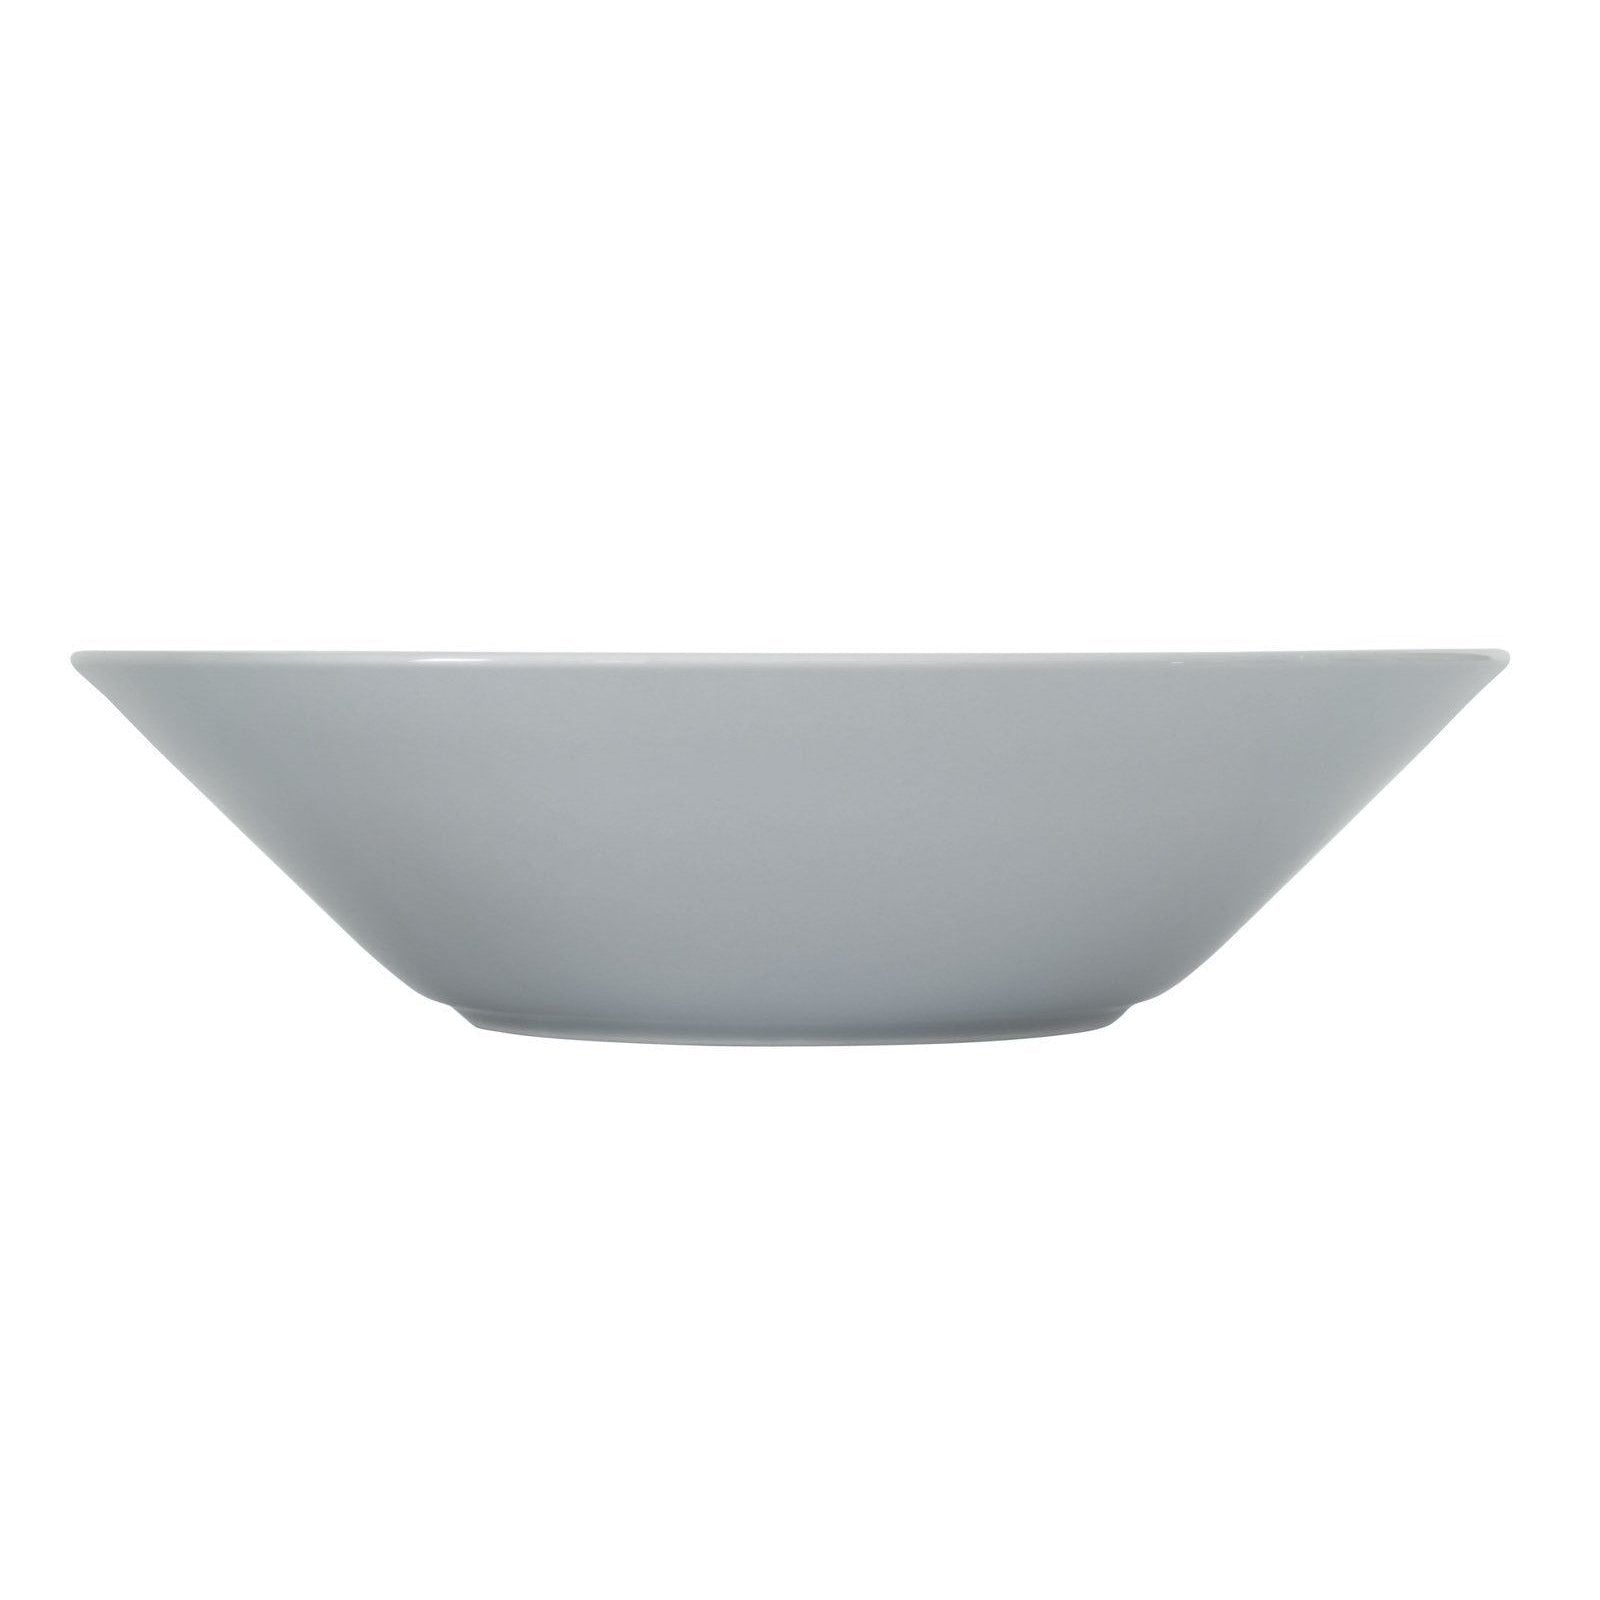 Iittala Teema Plate Deep Pearl Gray, 21 cm